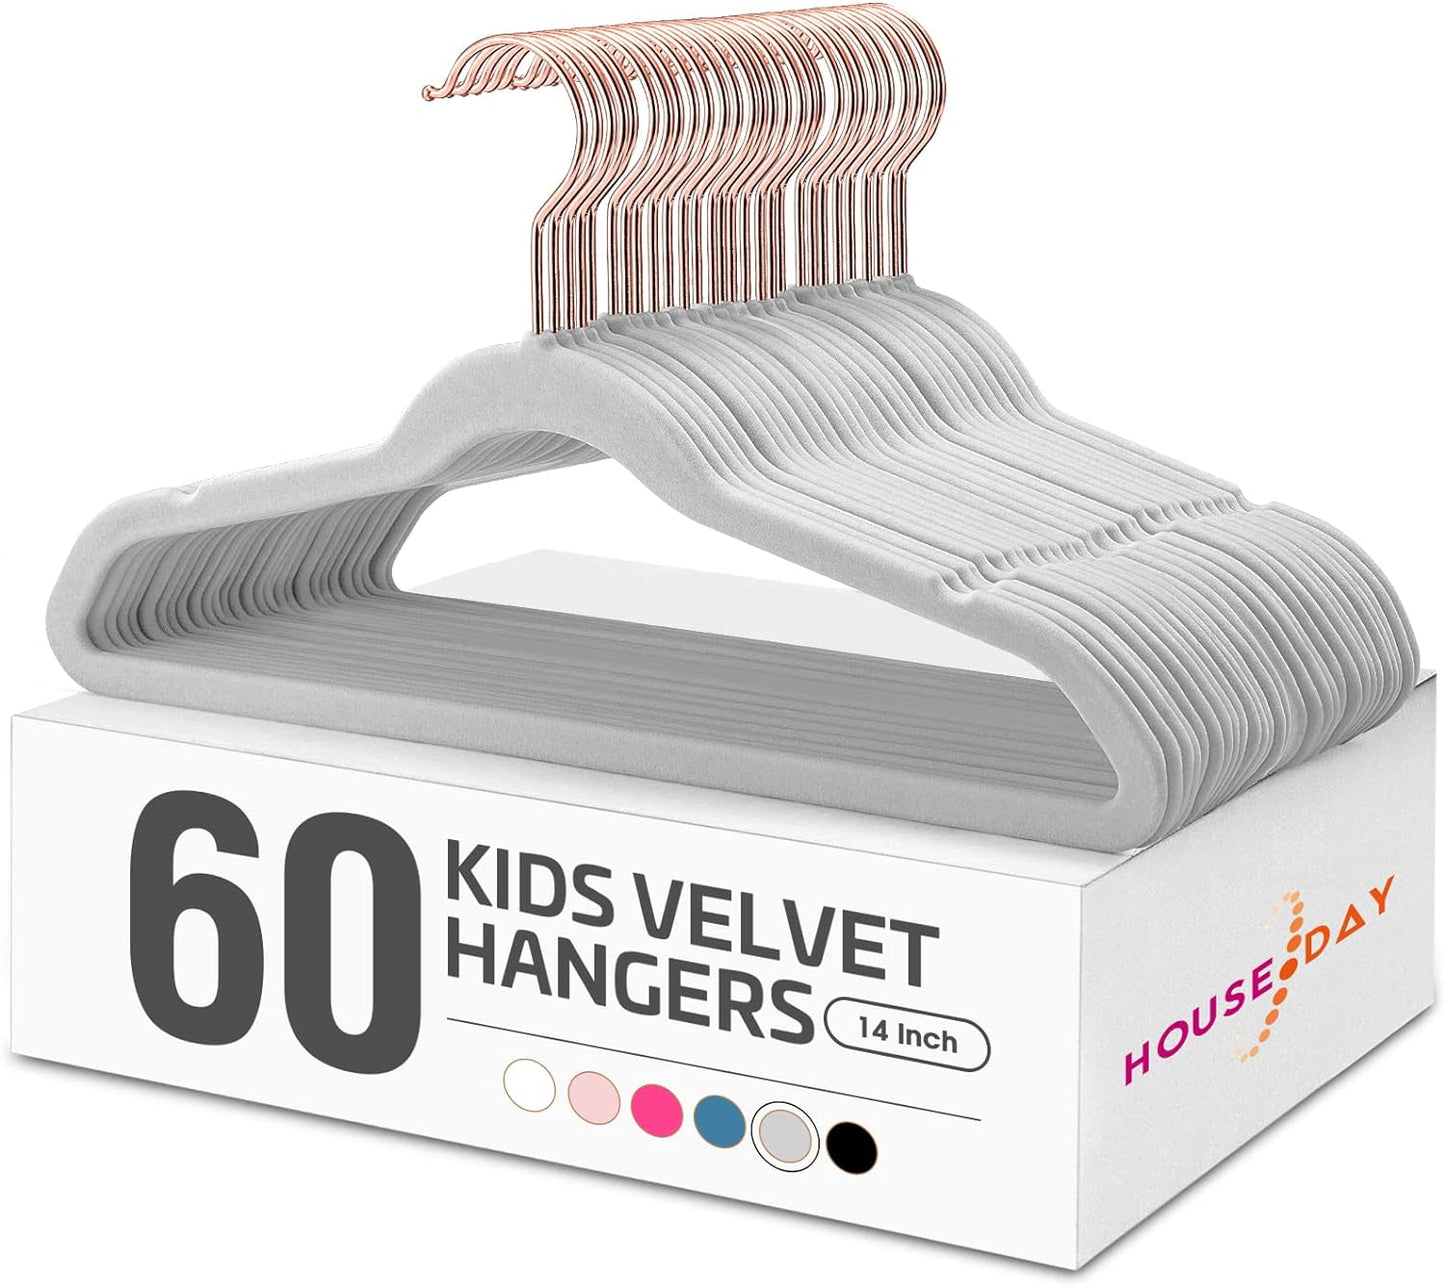 HOUSE DAY 14 Inch Velvet Kids Hangers 60 Pack Grey